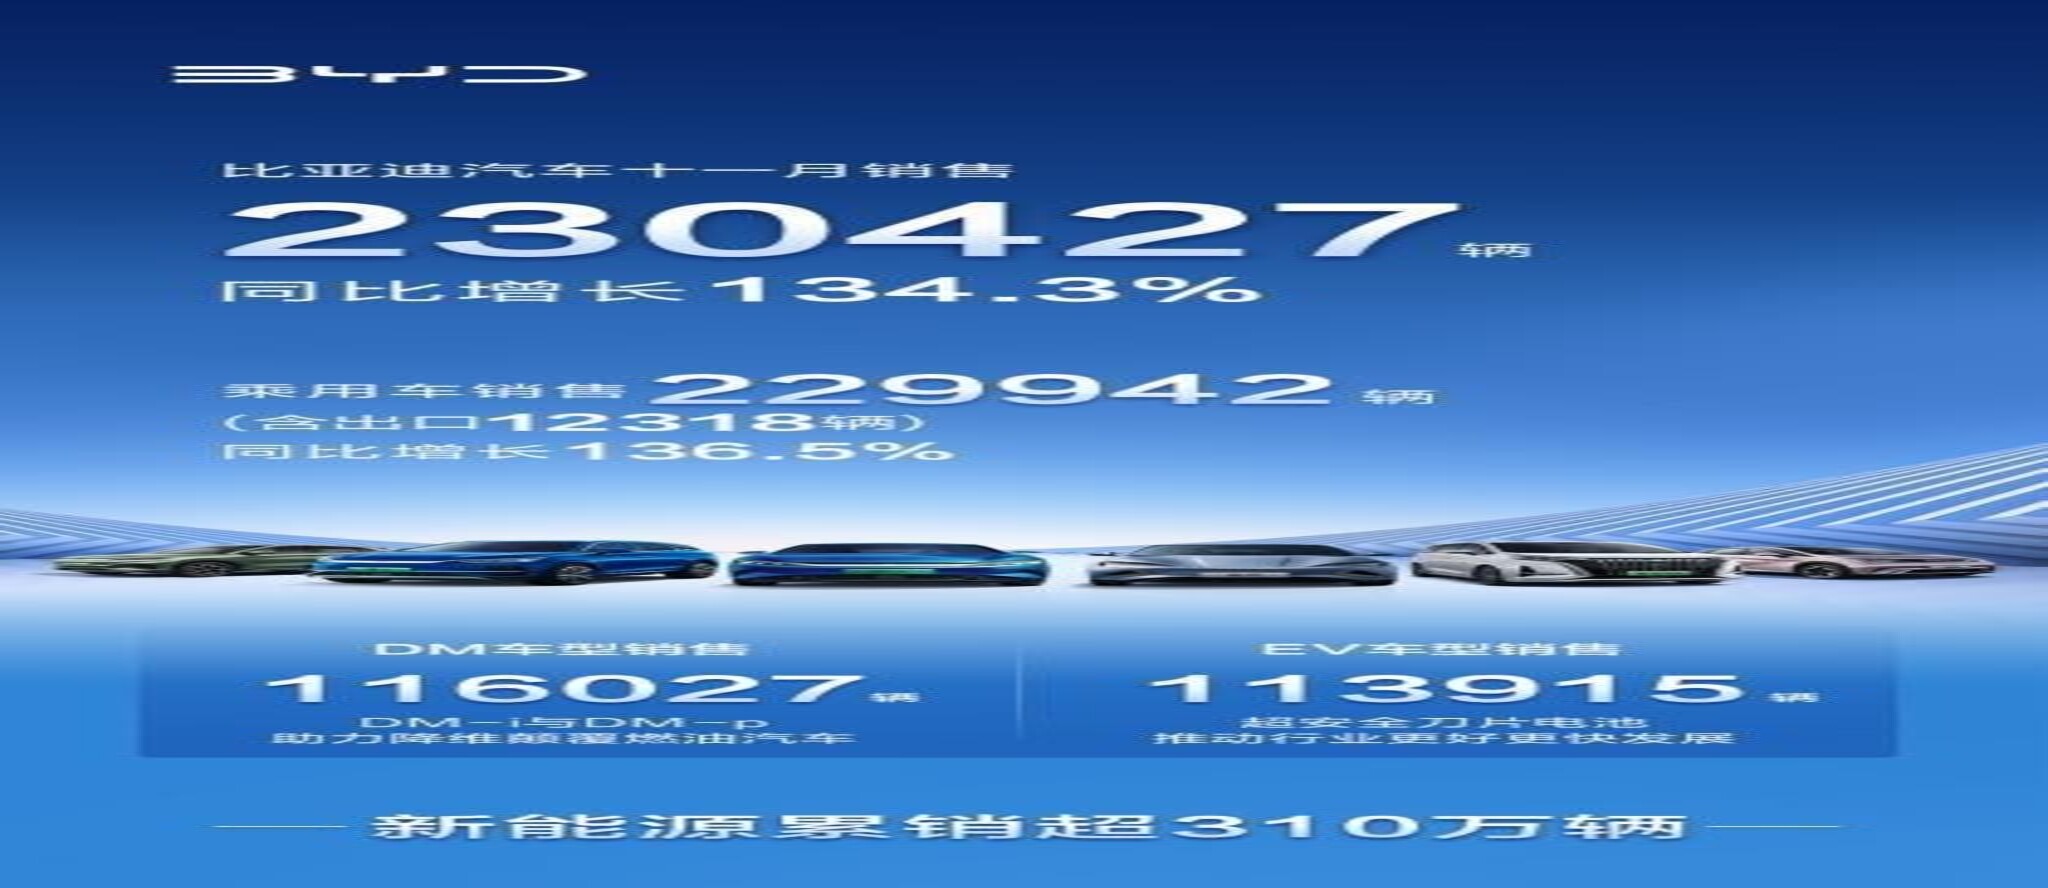 11月销售230427辆！比亚迪汽车创中国新能源销量新高